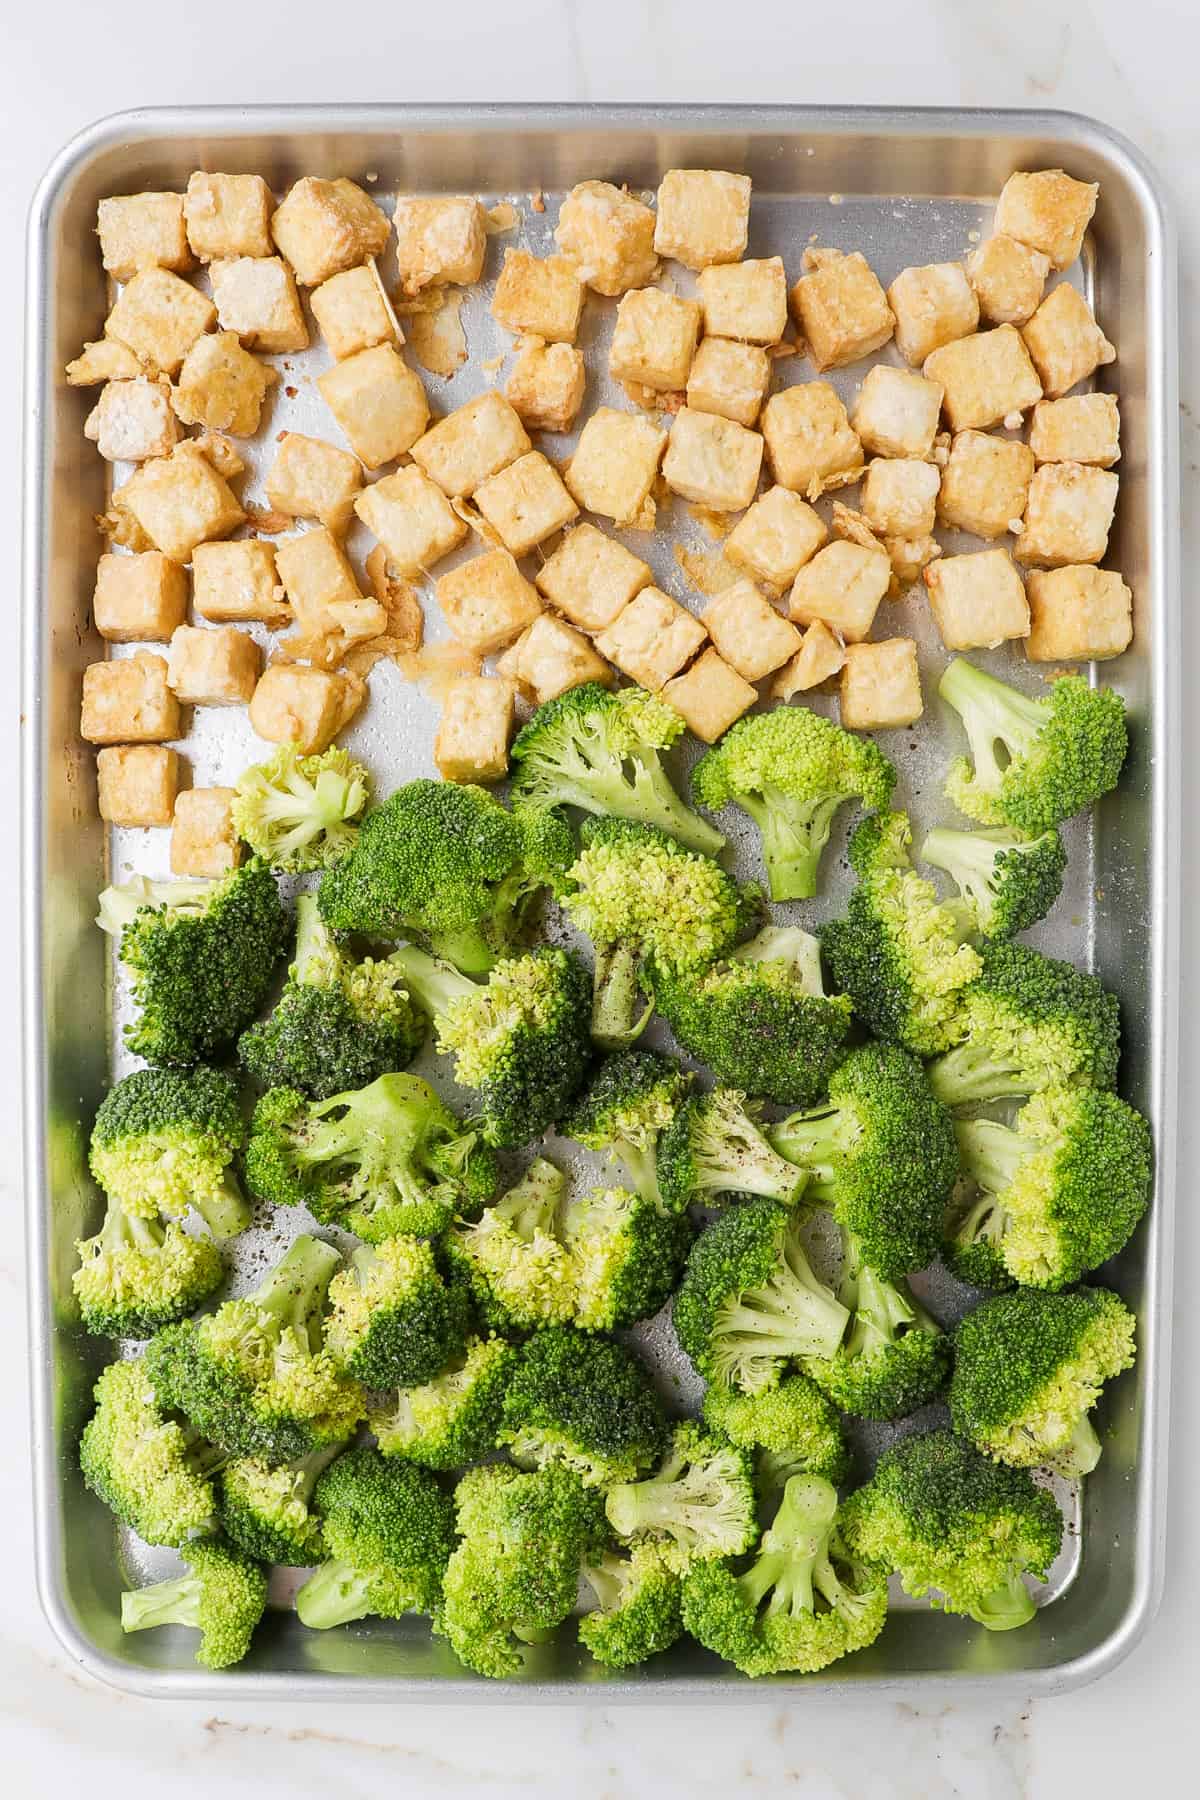 Baked tofu and seasoned broccoli on a pan.